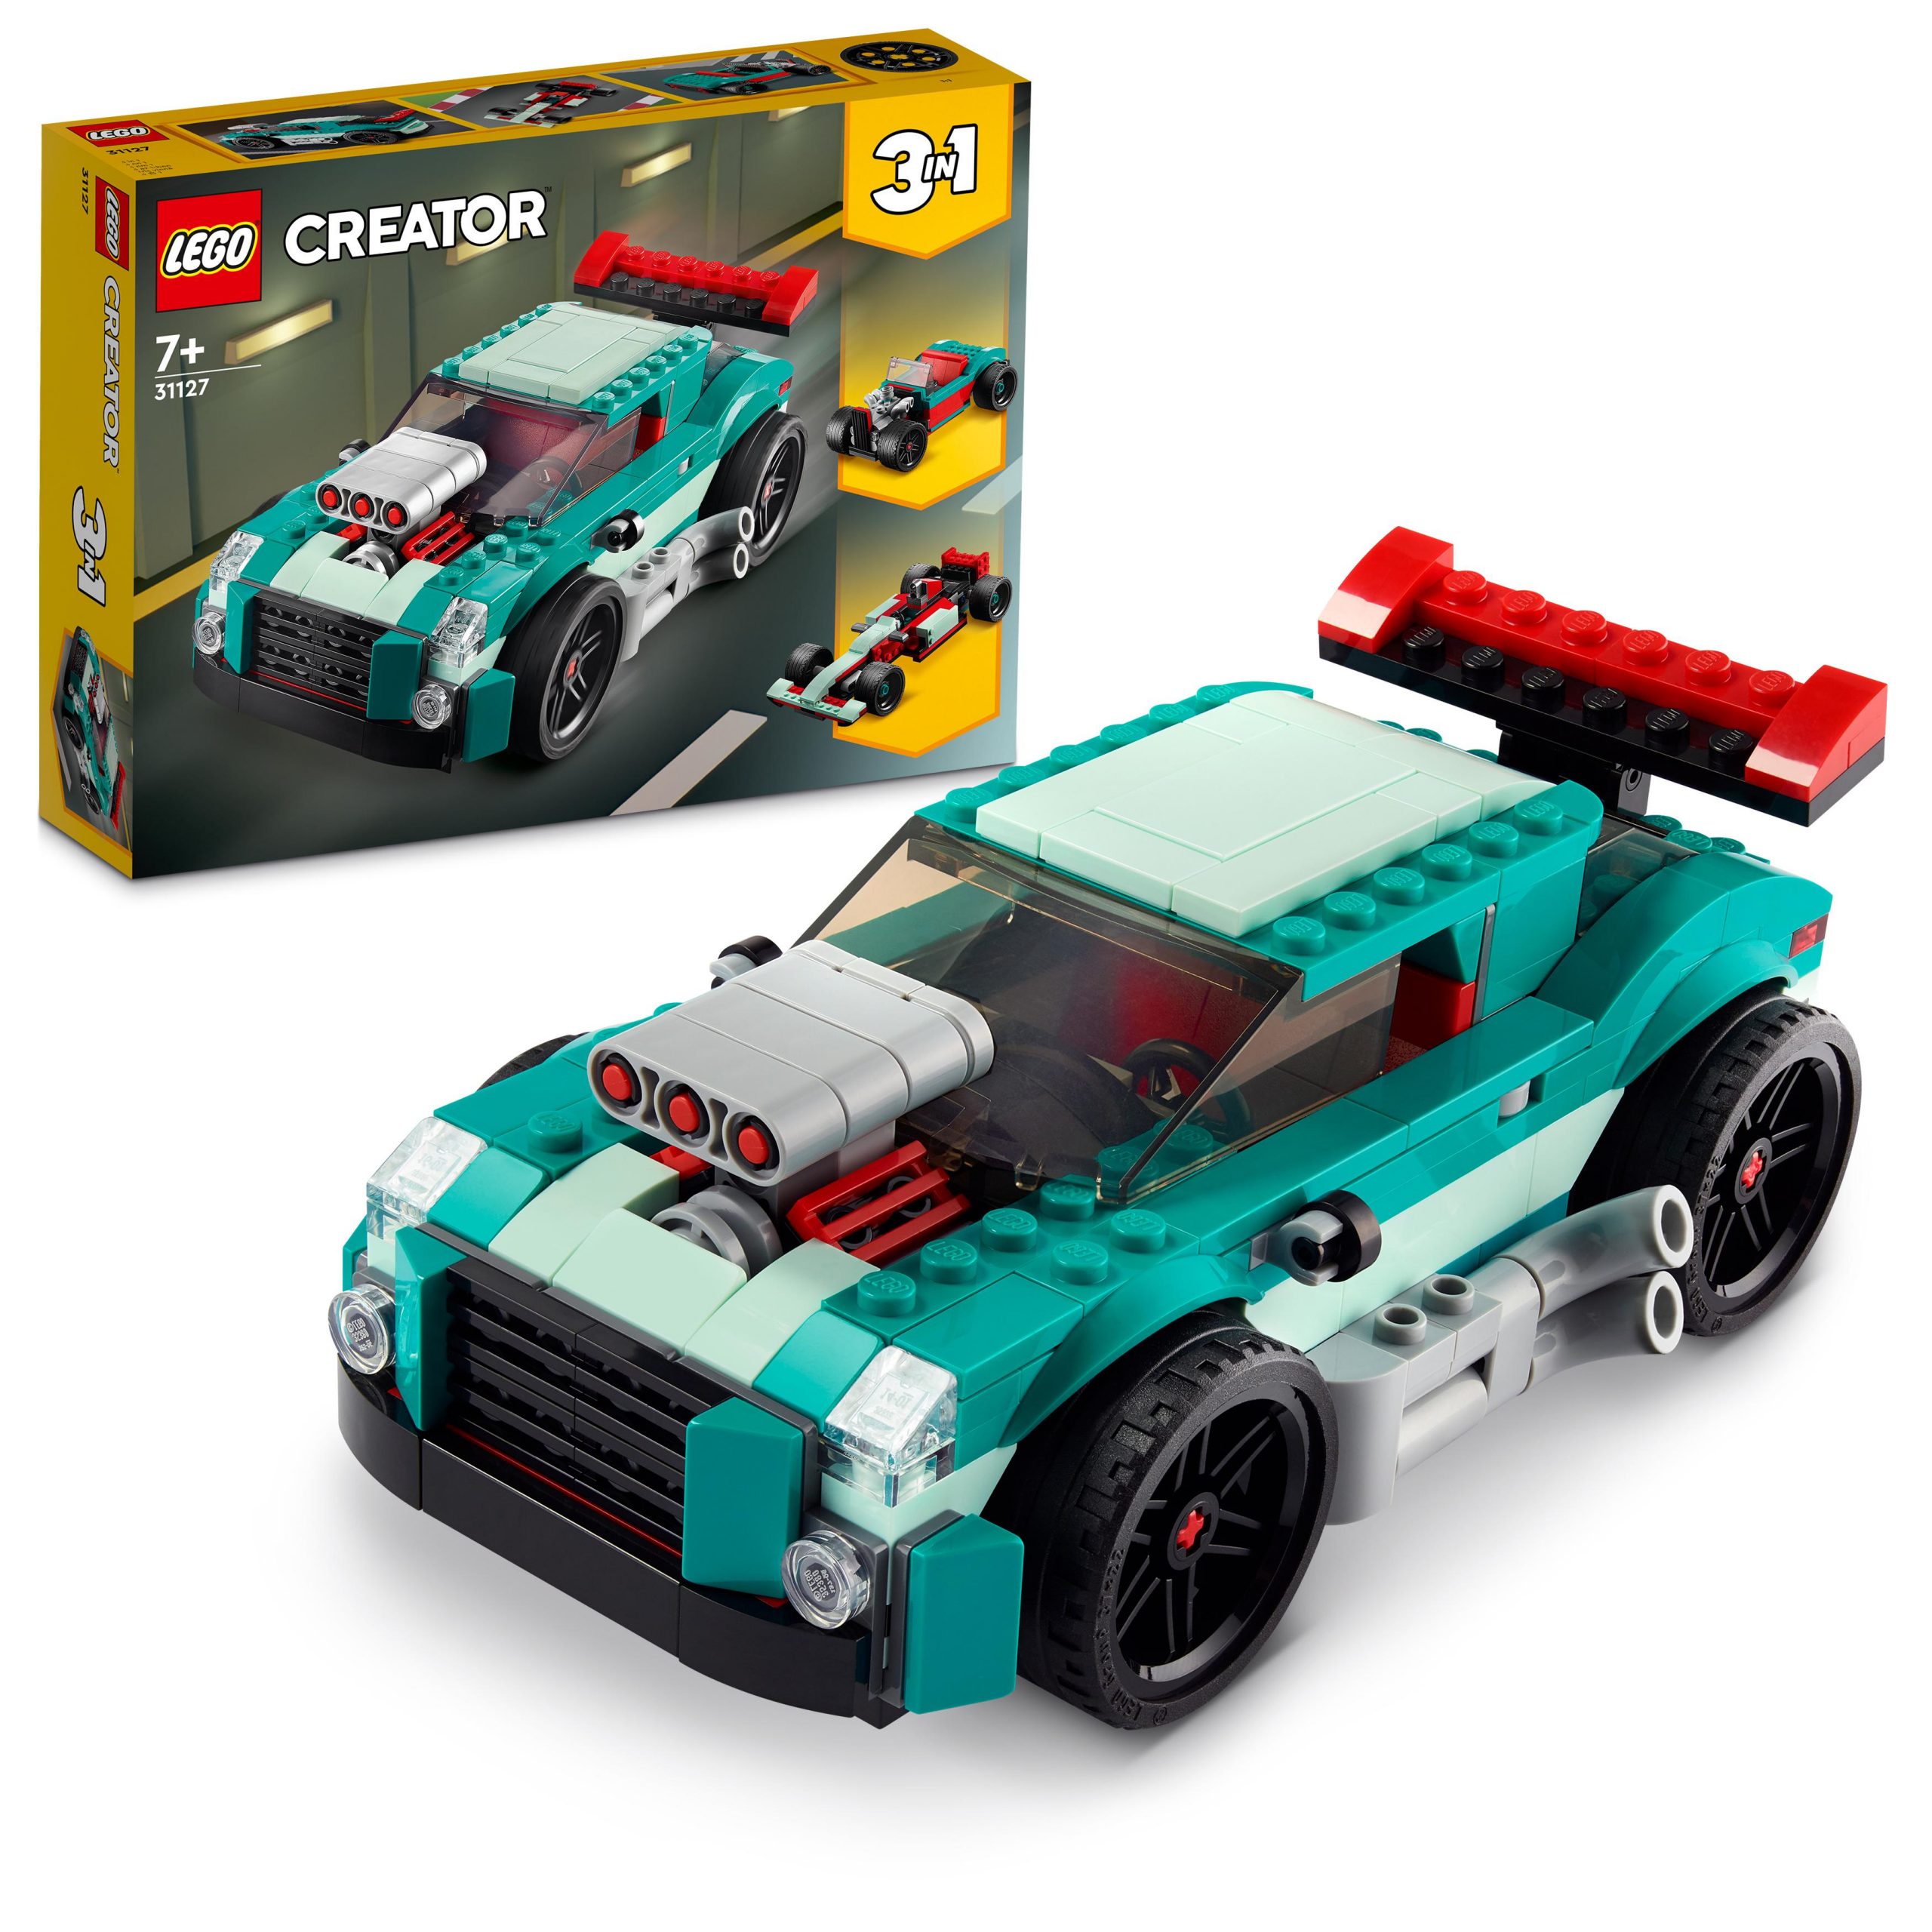 Lego creator 31127 3in1 street racer, macchine giocattolo, auto da corsa  per bambini di 7+ anni, costruzione con mattoncini - Toys Center